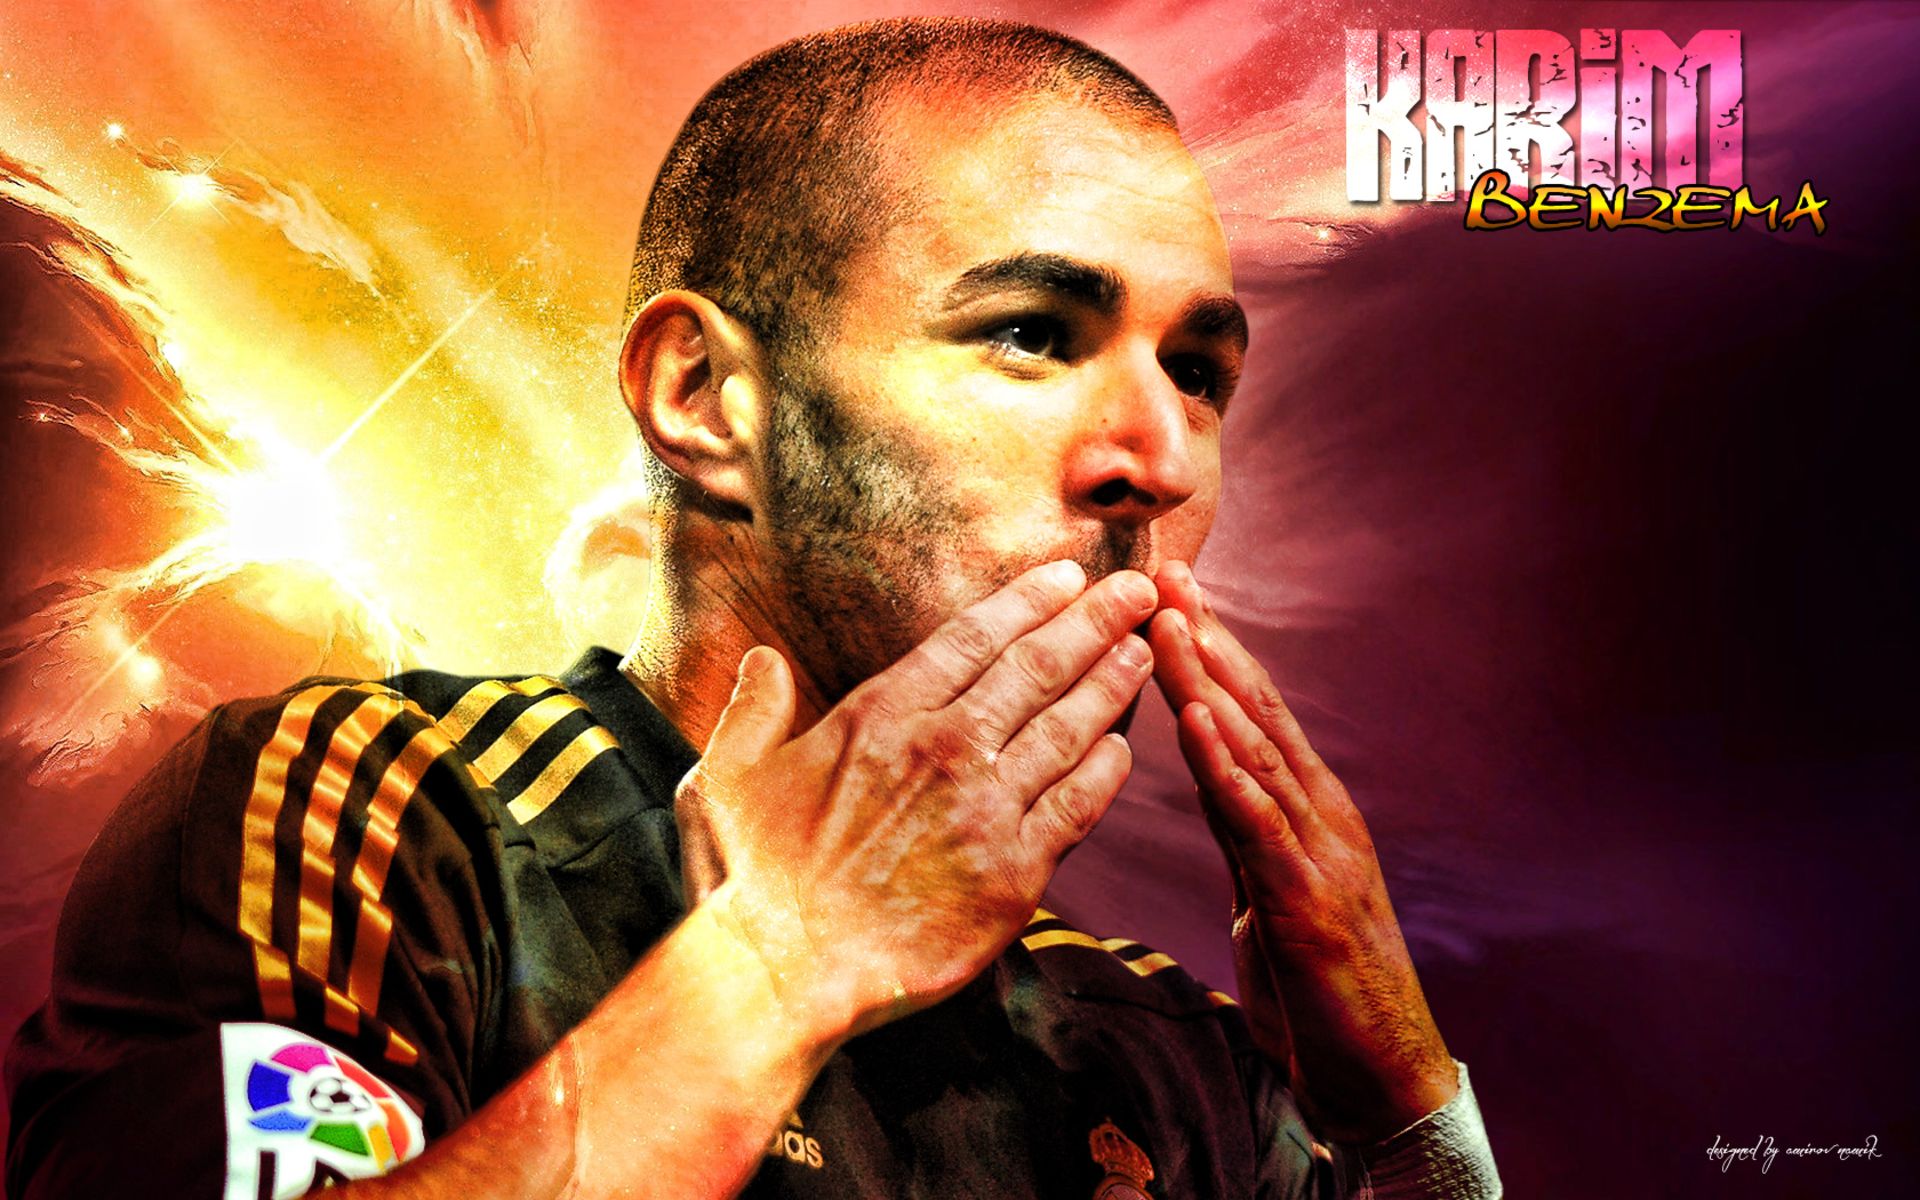 Descarga gratuita de fondo de pantalla para móvil de Fútbol, Deporte, Real Madrid C F, Karim Benzema.